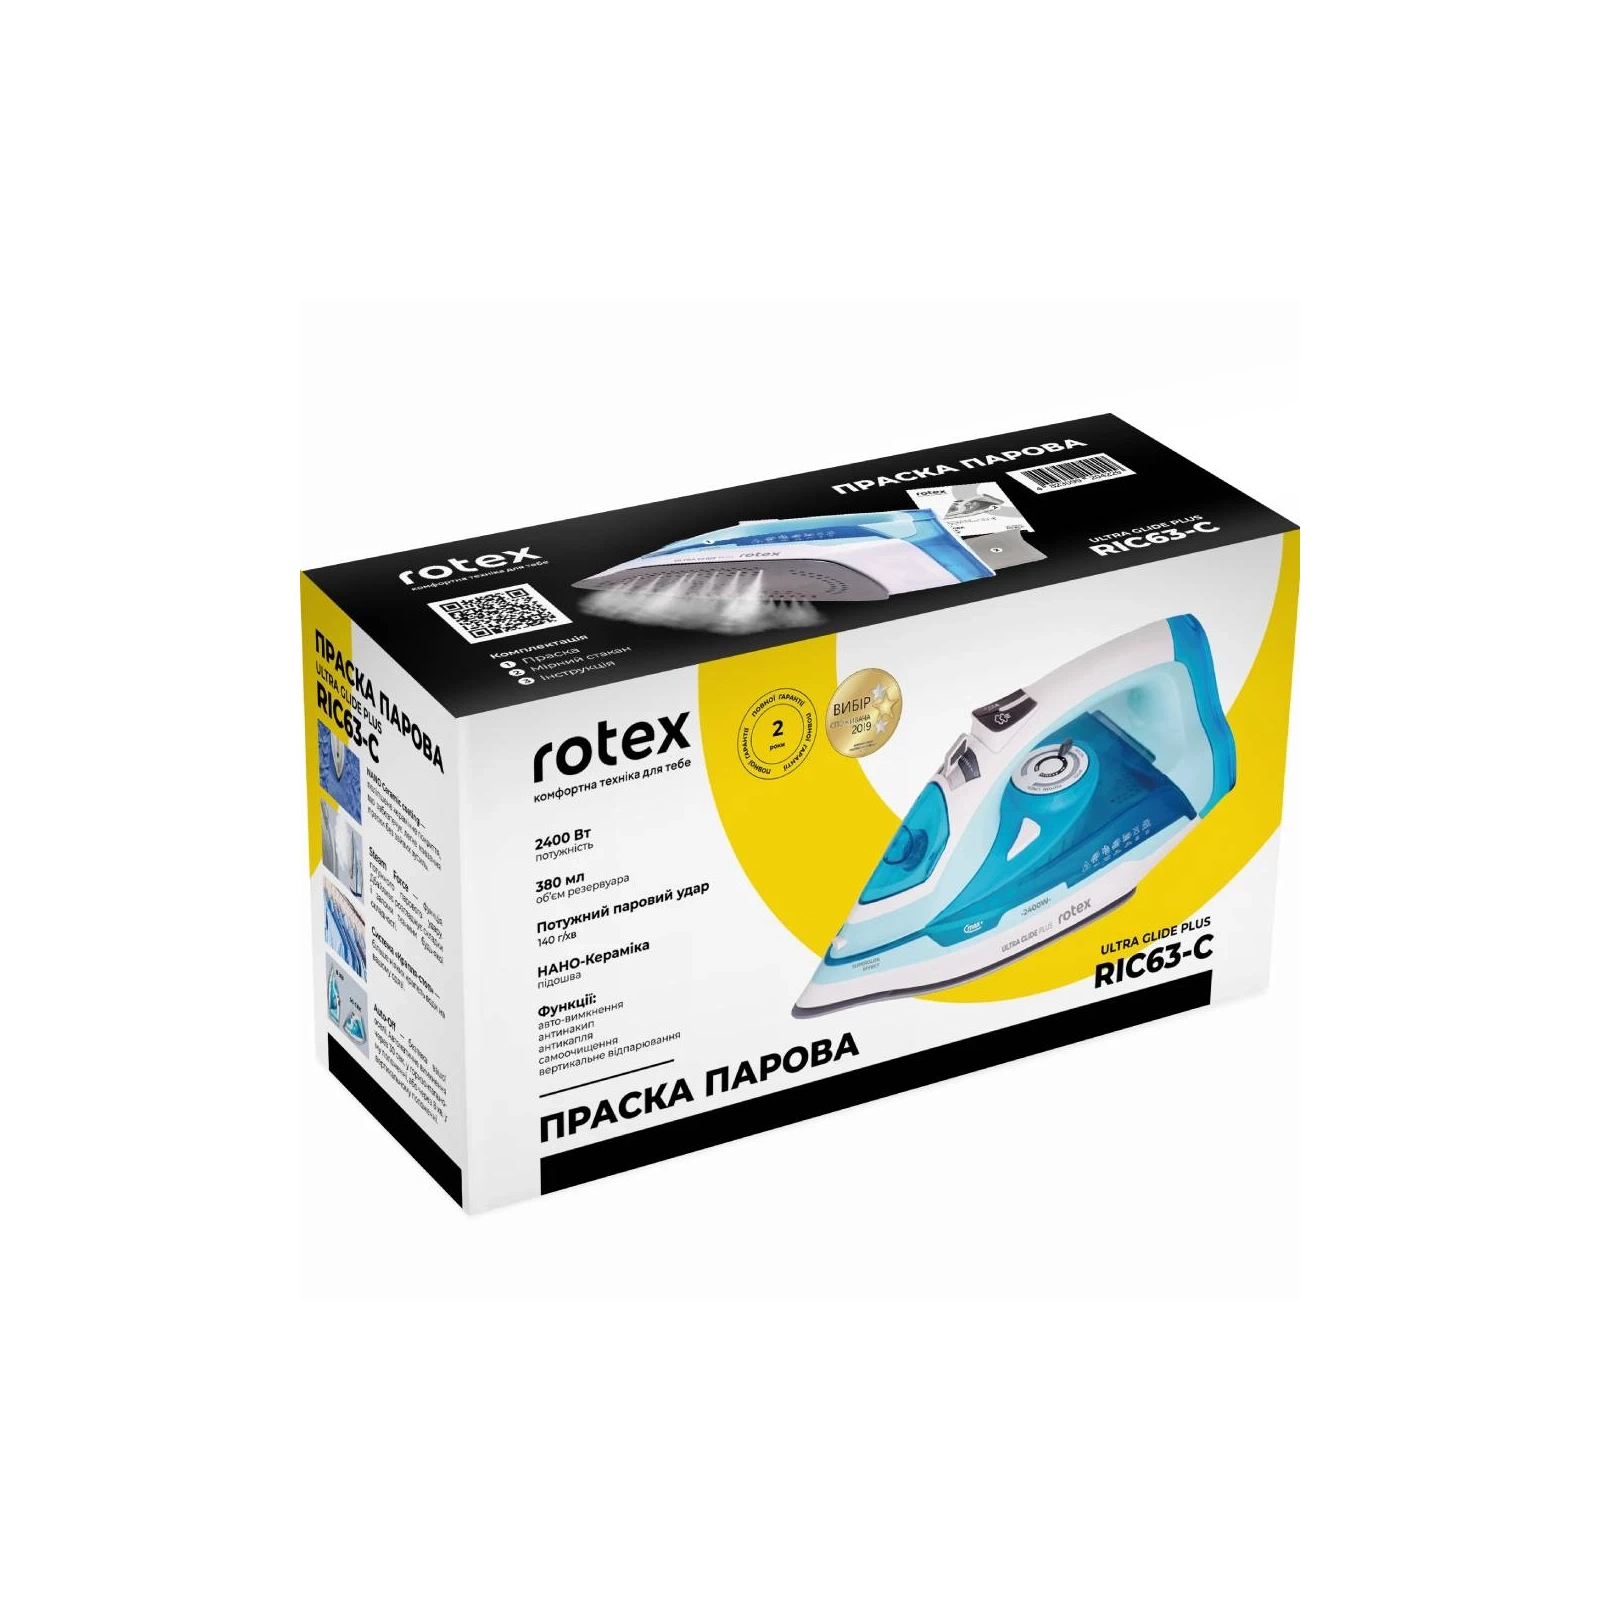 Утюг Rotex RIC63-C Ultra Glide Plus изображение 11